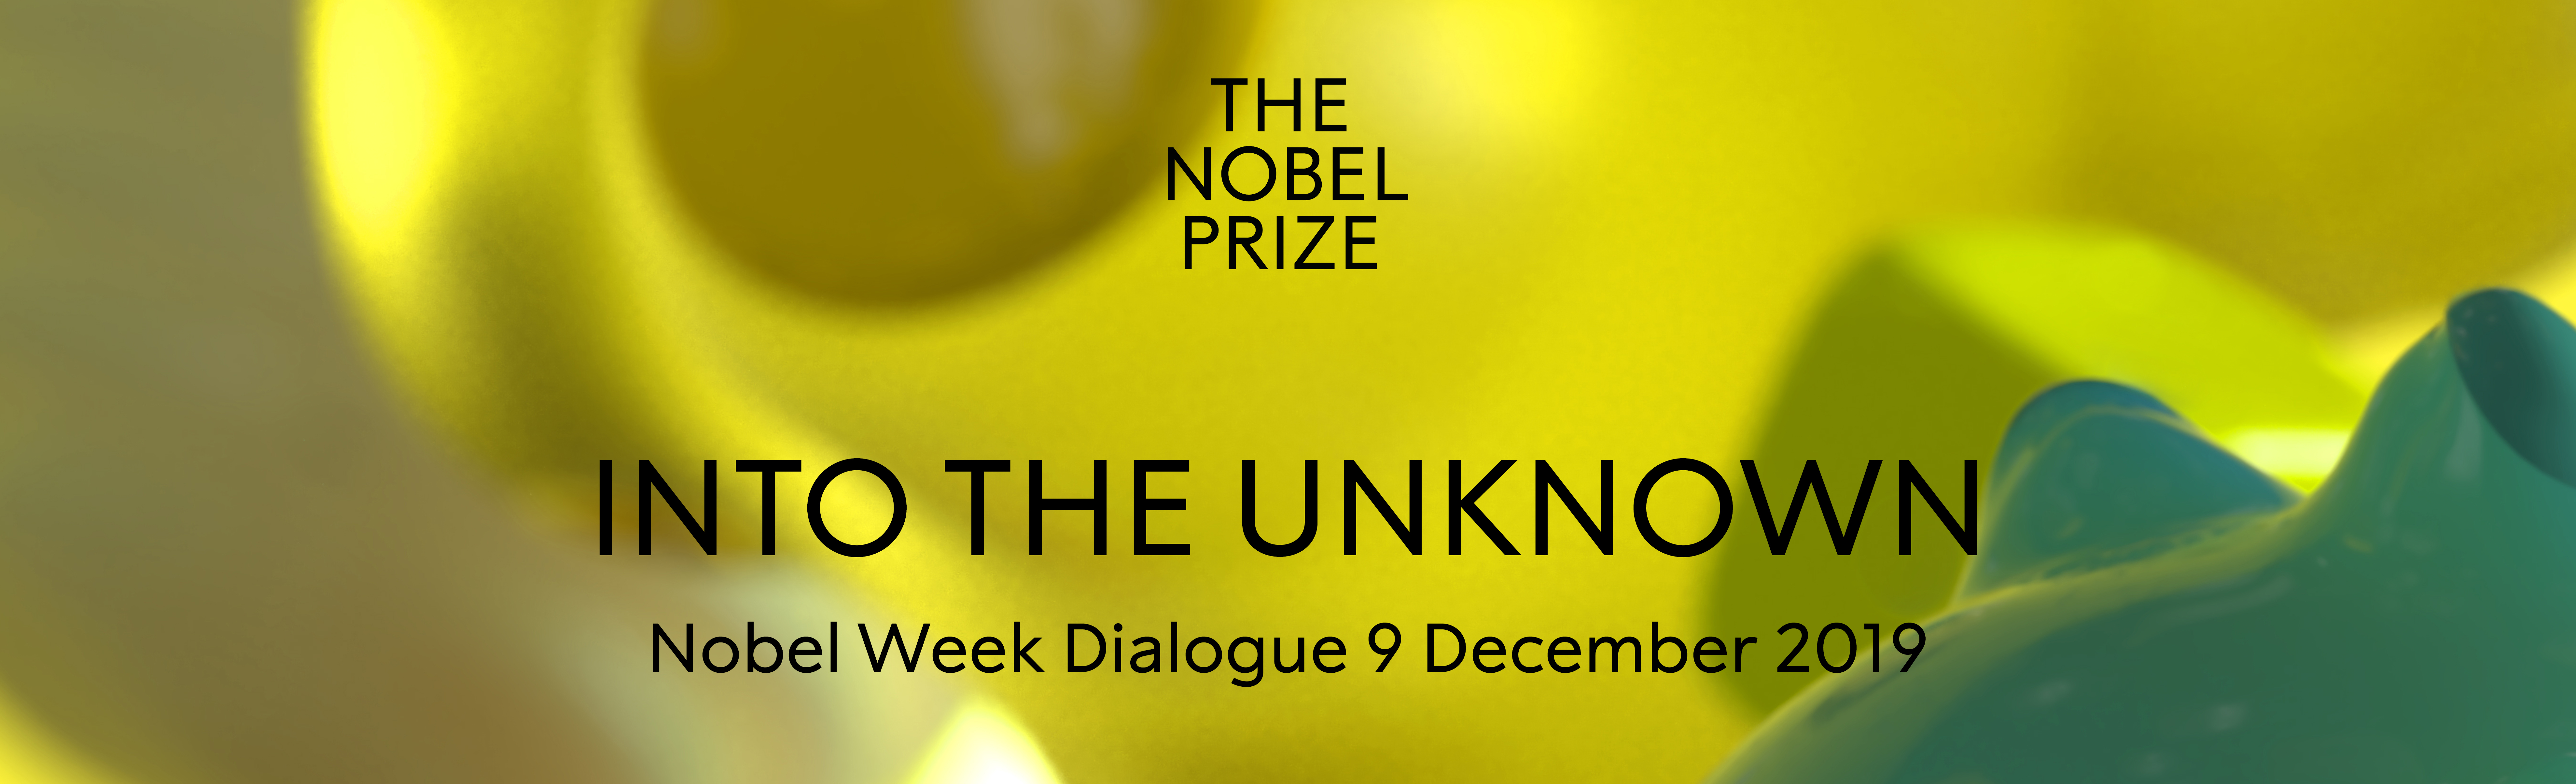 Header image for Nobel Week Dialogue 2019